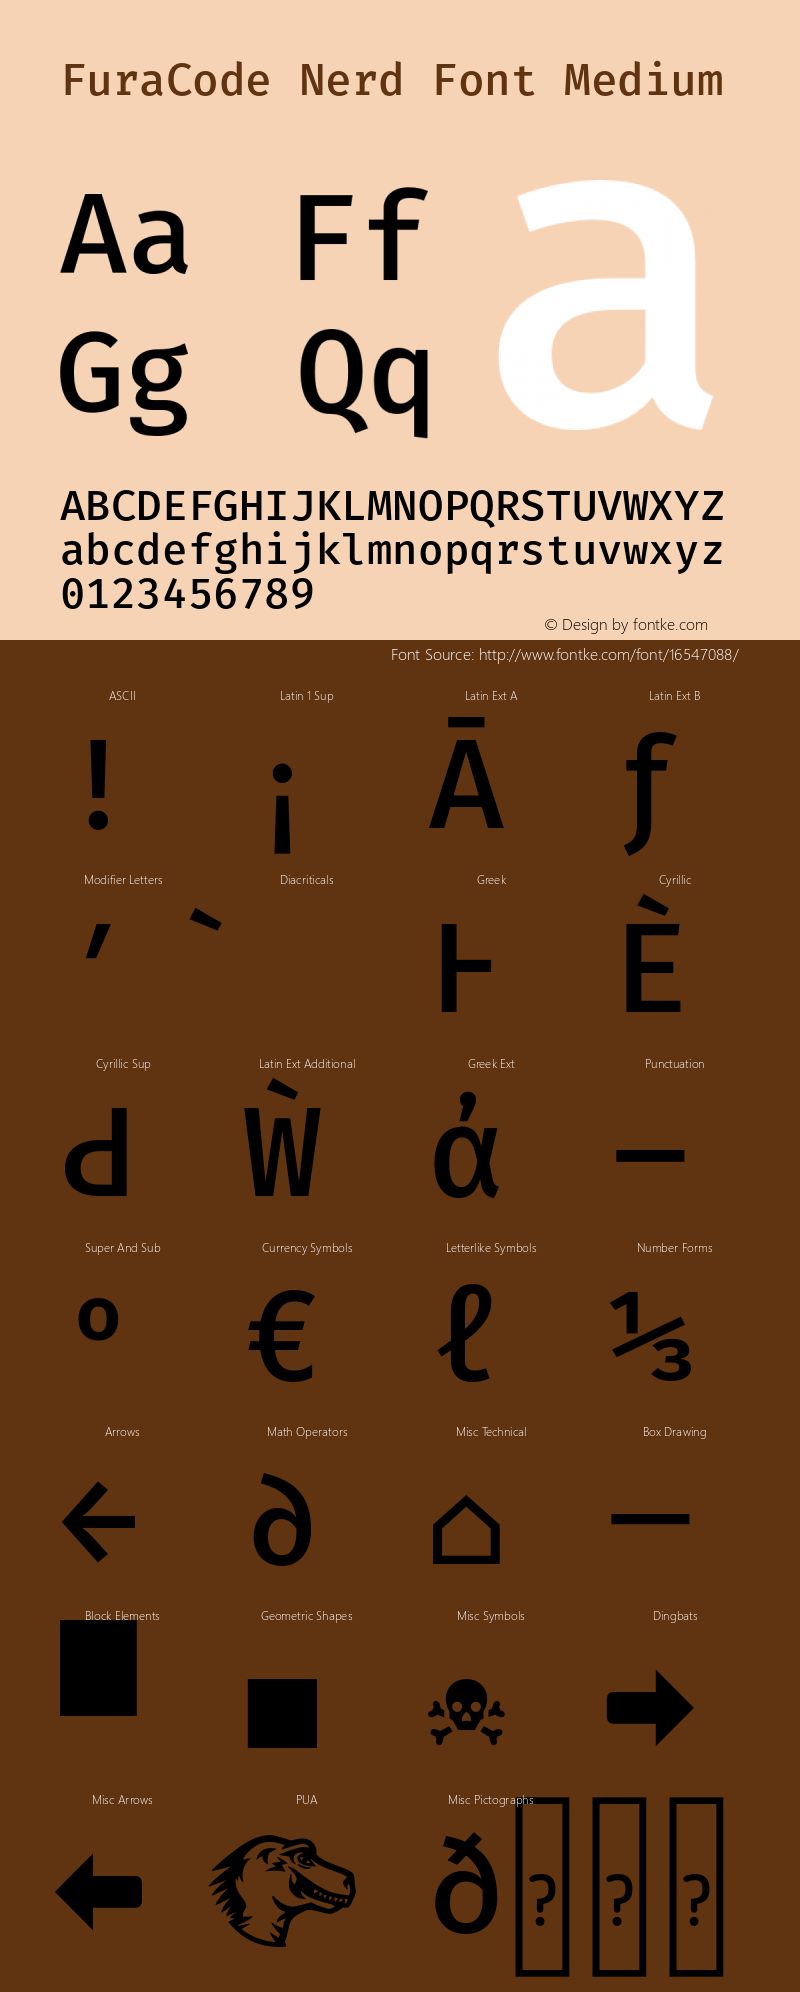 FuraCode Nerd Font Medium Version 1.102;PS 001.102;hotconv 1.0.88;makeotf.lib2.5.64775图片样张